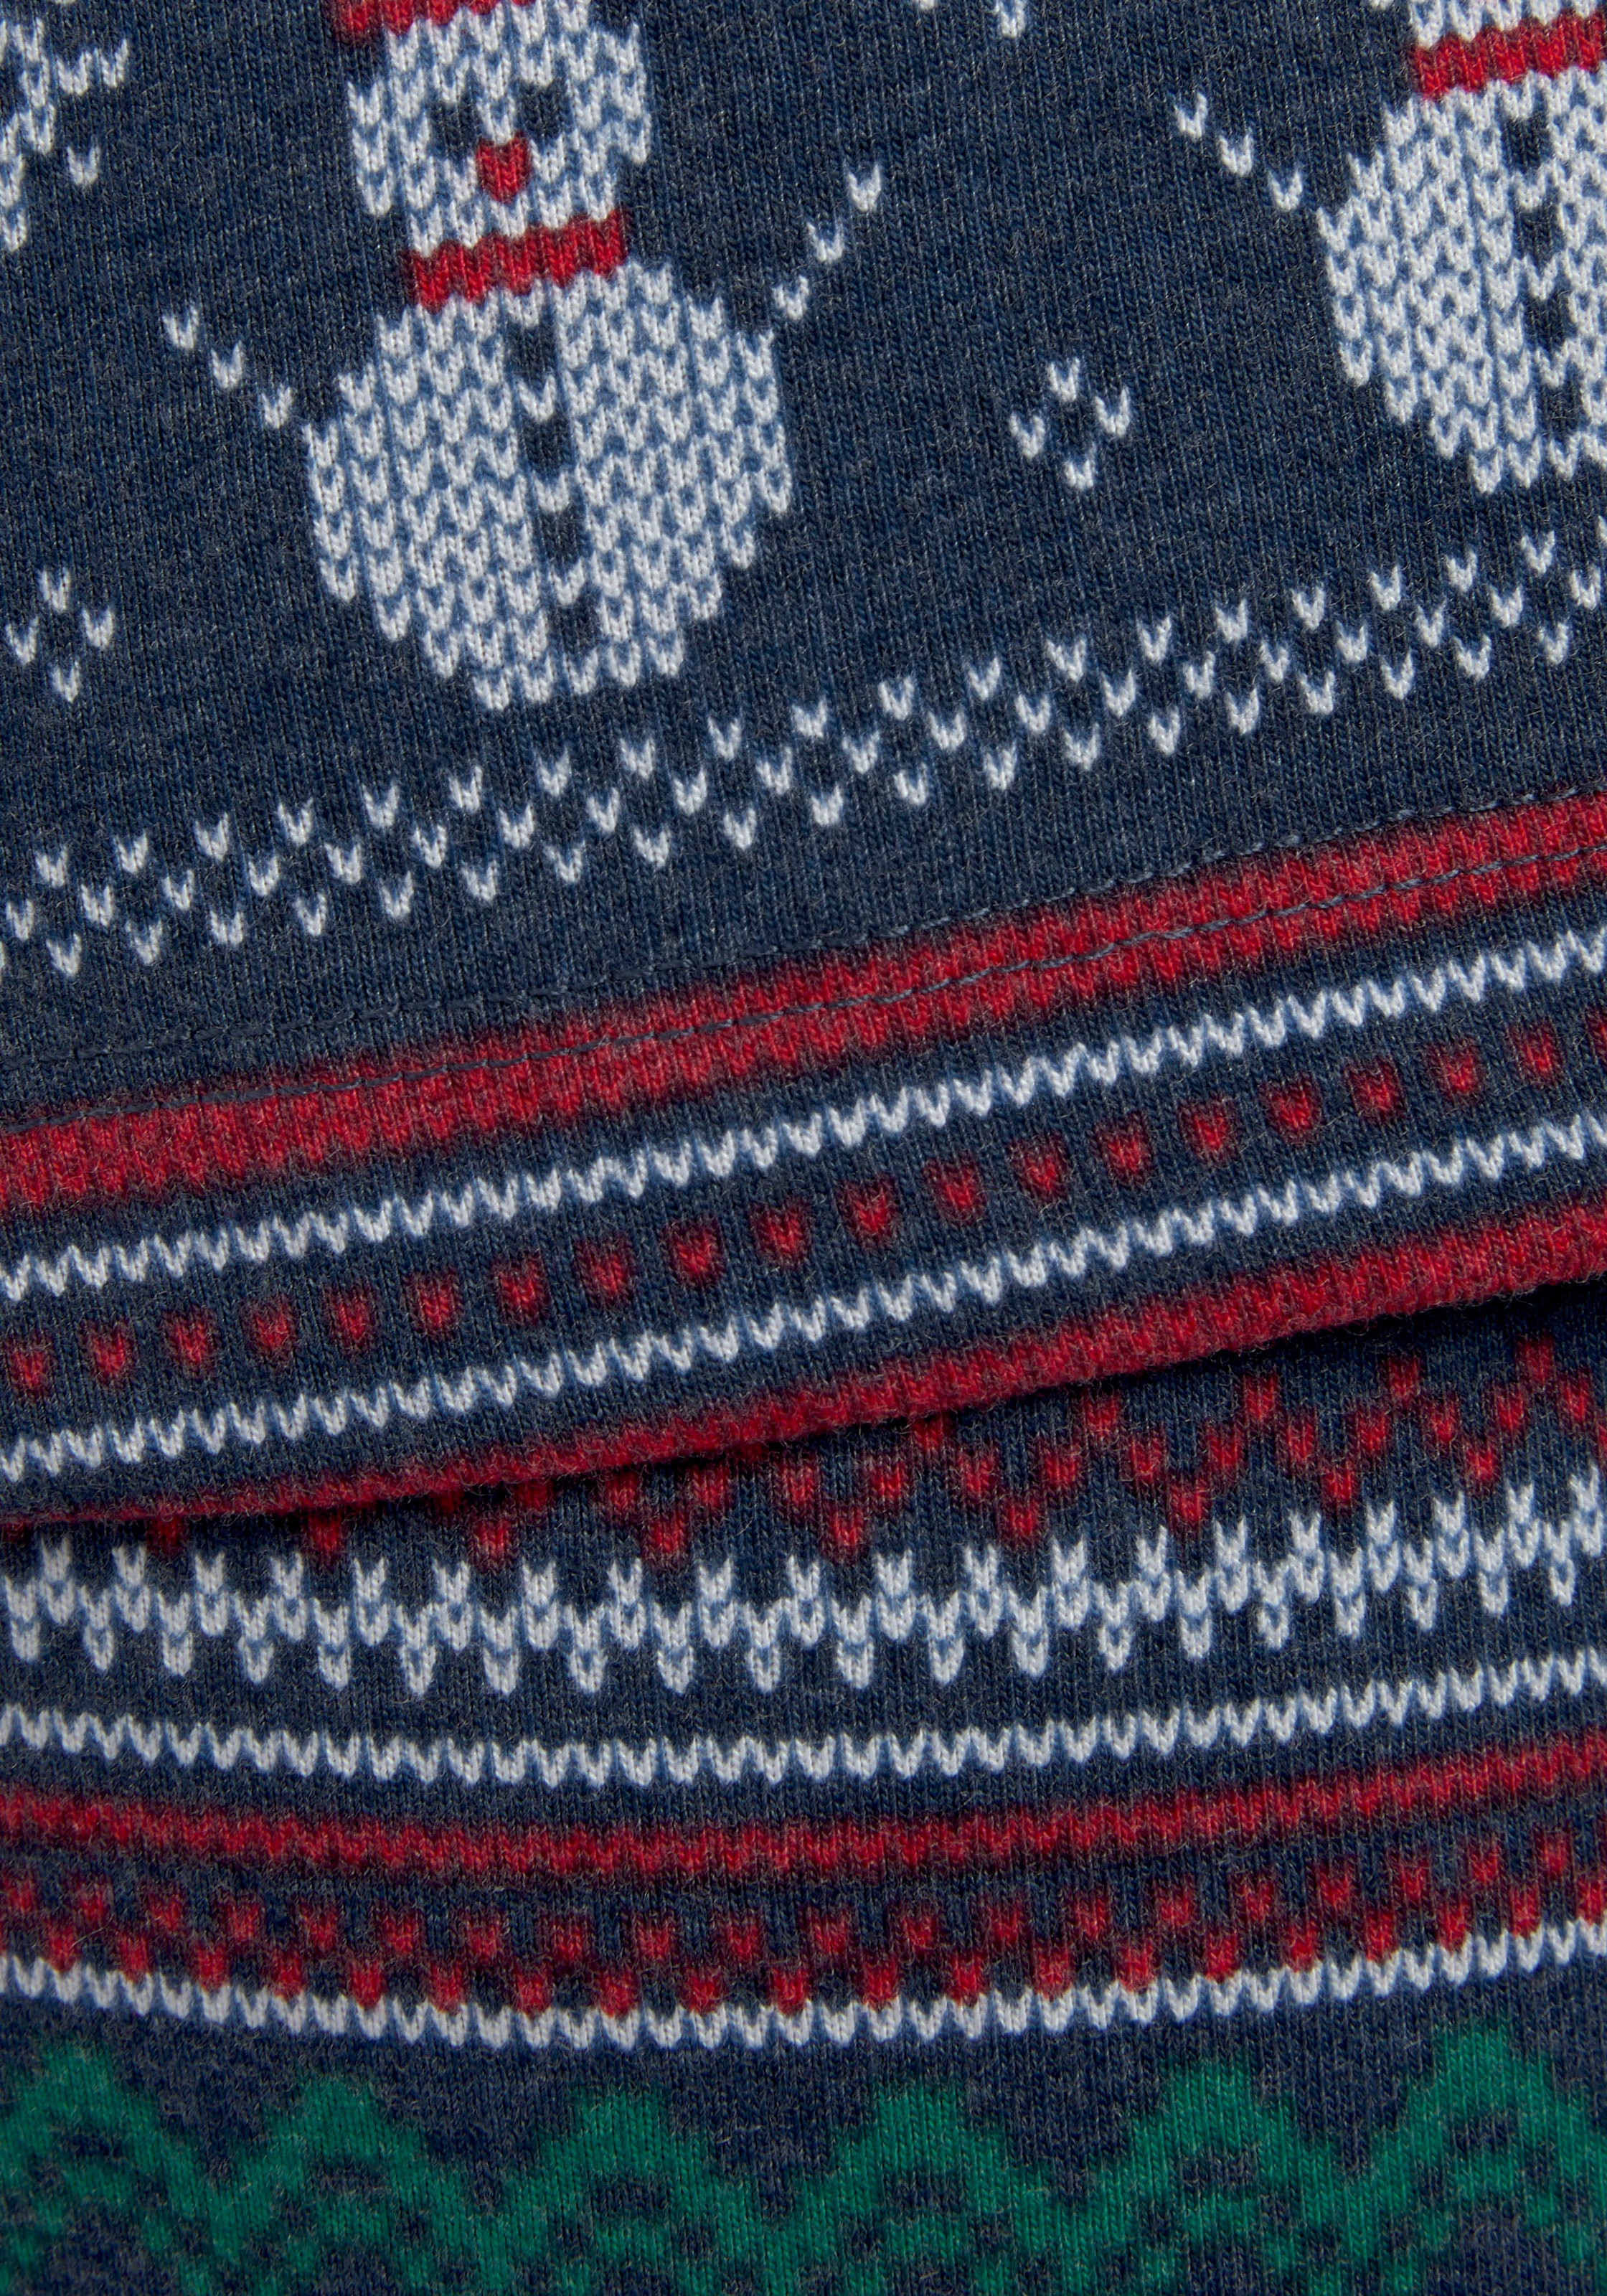 LASCANA Pyjama, (2 tlg.), mit winterlichem Druck » LASCANA | Bademode,  Unterwäsche & Lingerie online kaufen